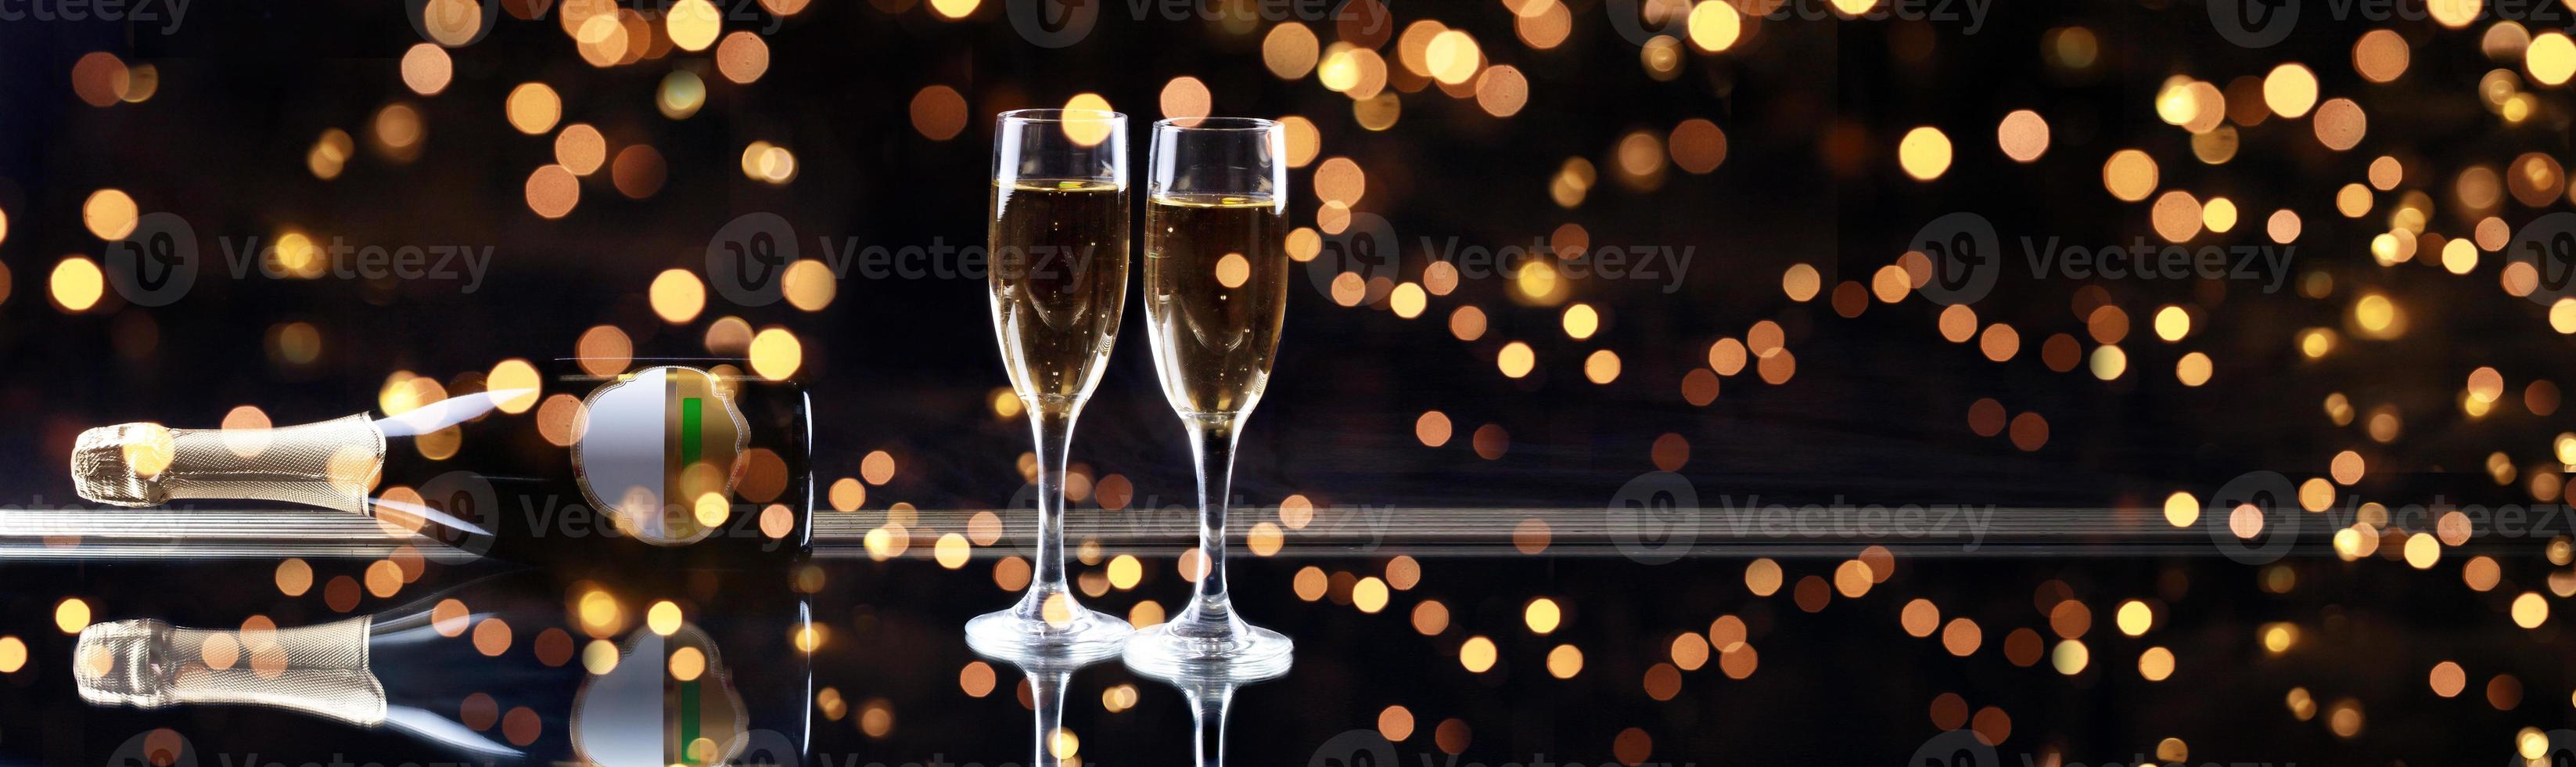 fundo de celebração de ano novo com champanhe foto